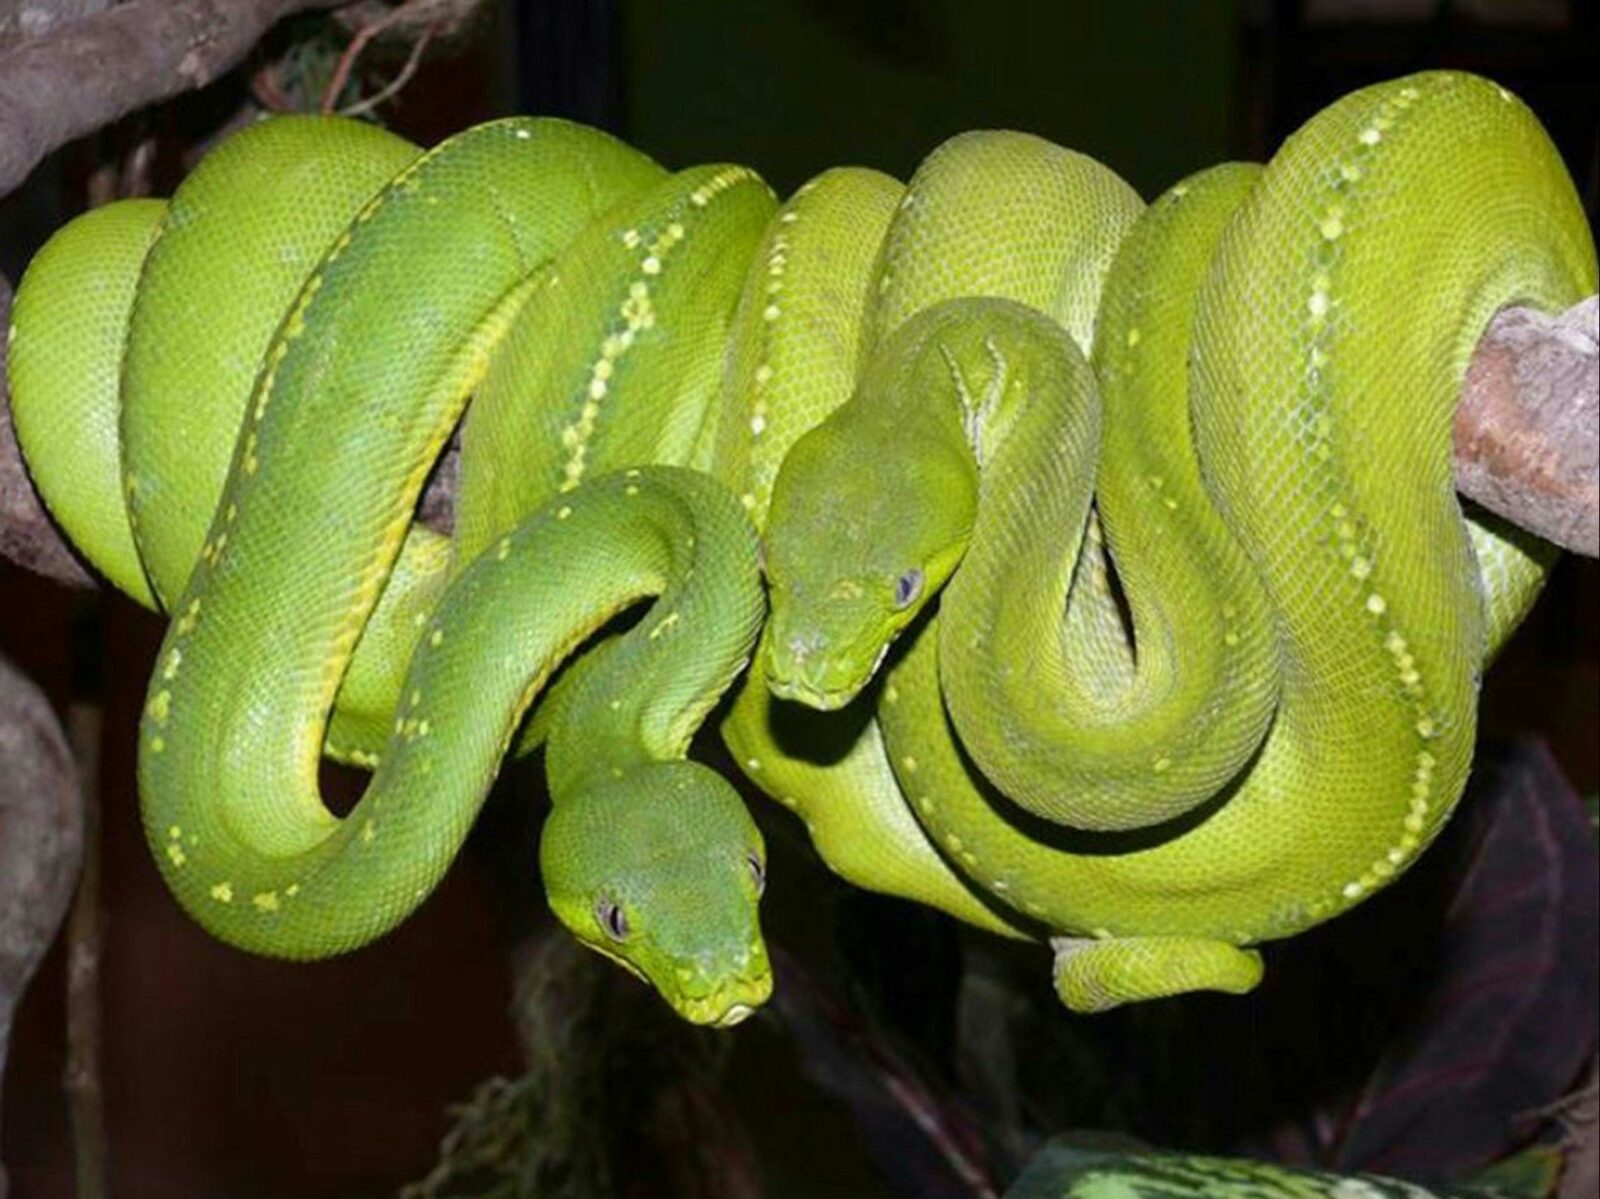 Aussie green tree pythons